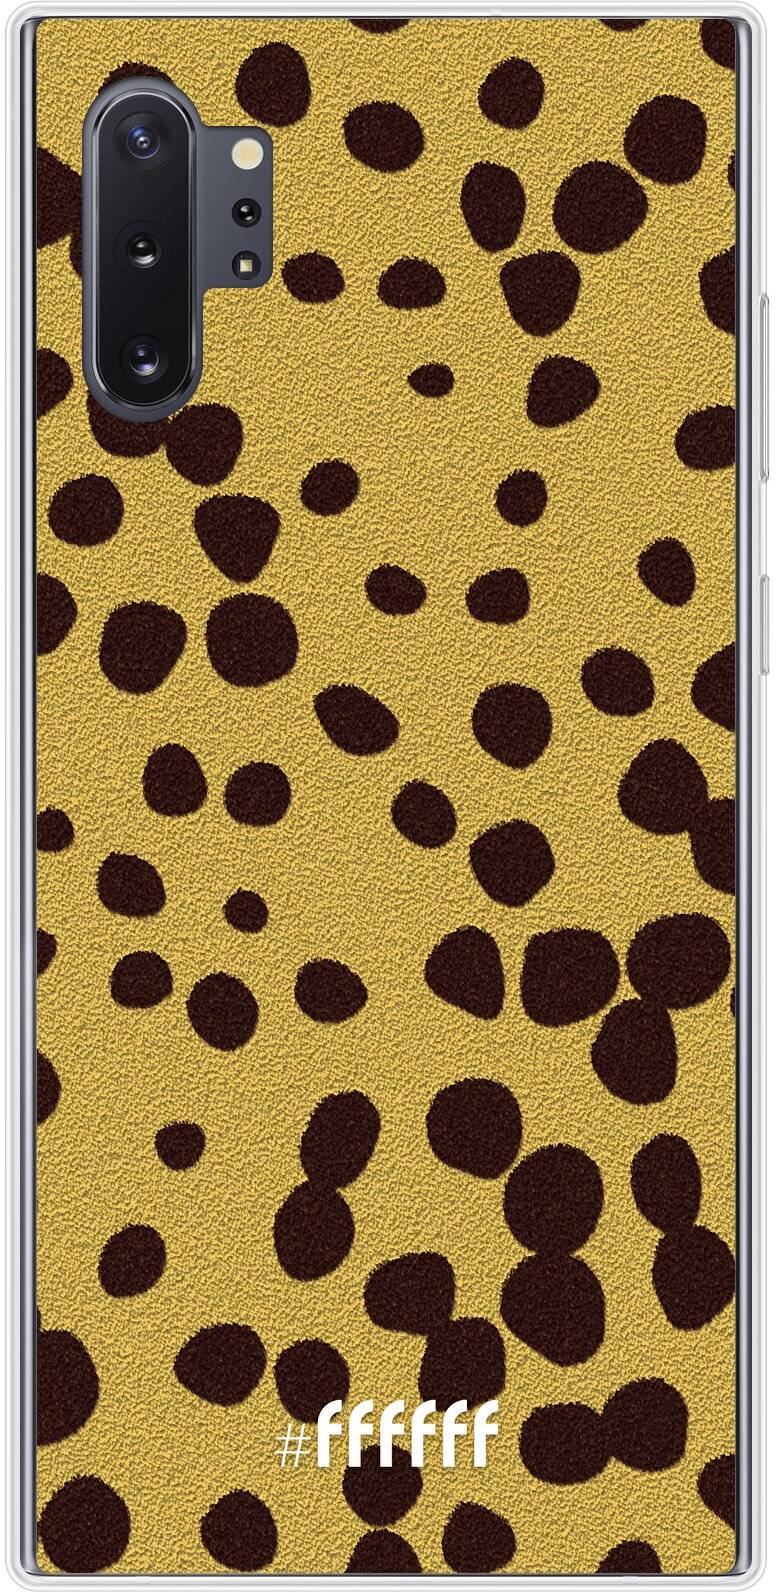 Cheetah Print Galaxy Note 10 Plus